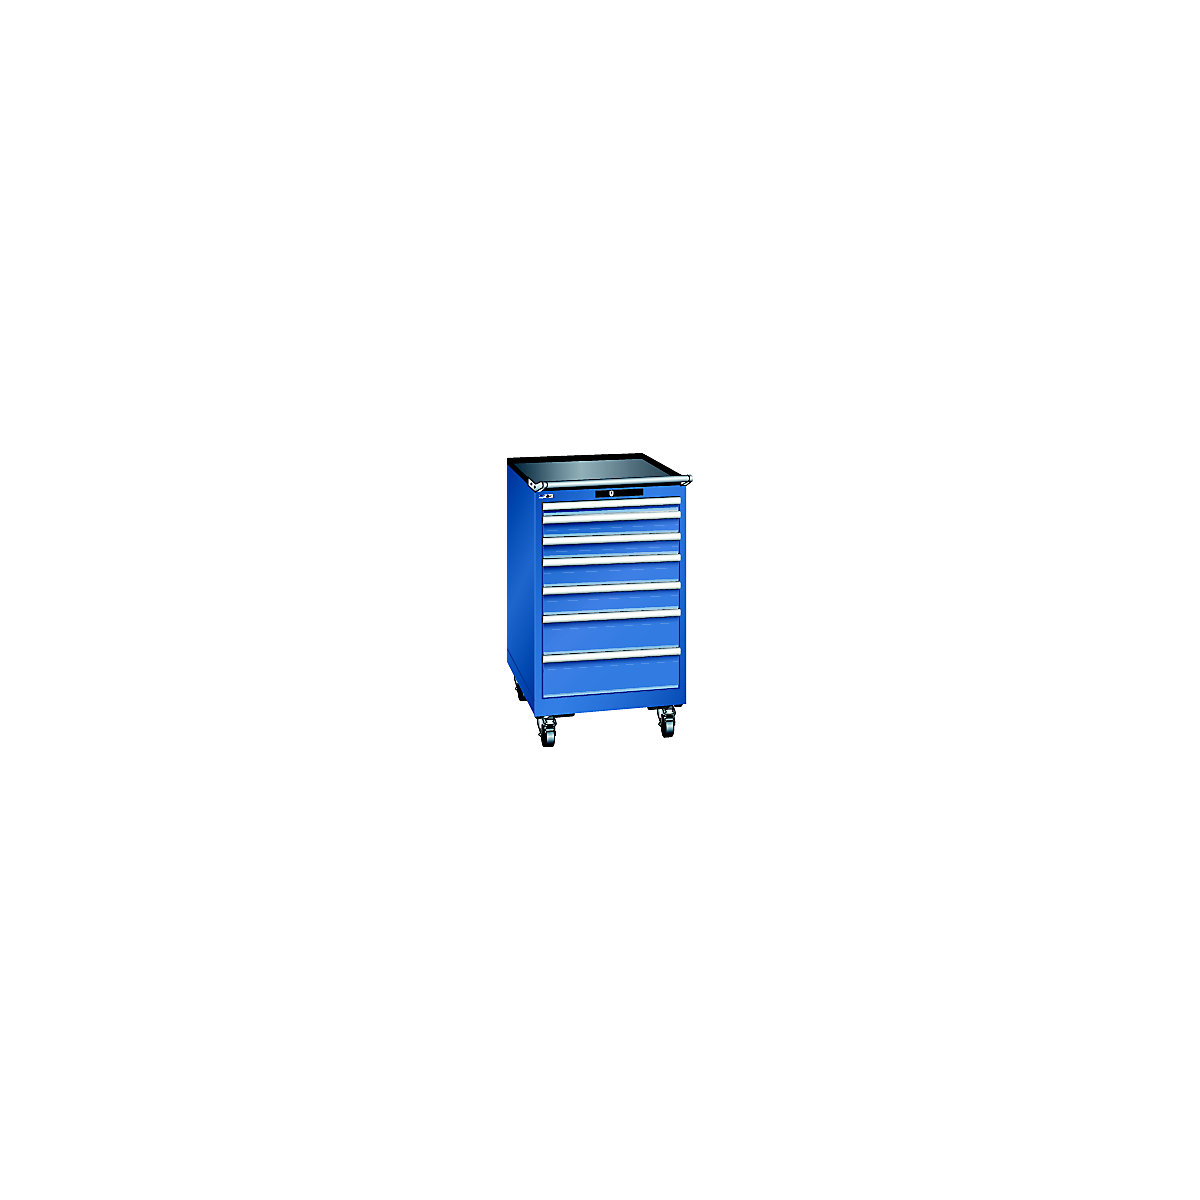 LISTA – Ladičar, pomičan, ŠxDxV 564 x 725 x 990 mm, 7 ladica, u encijan plavoj boji